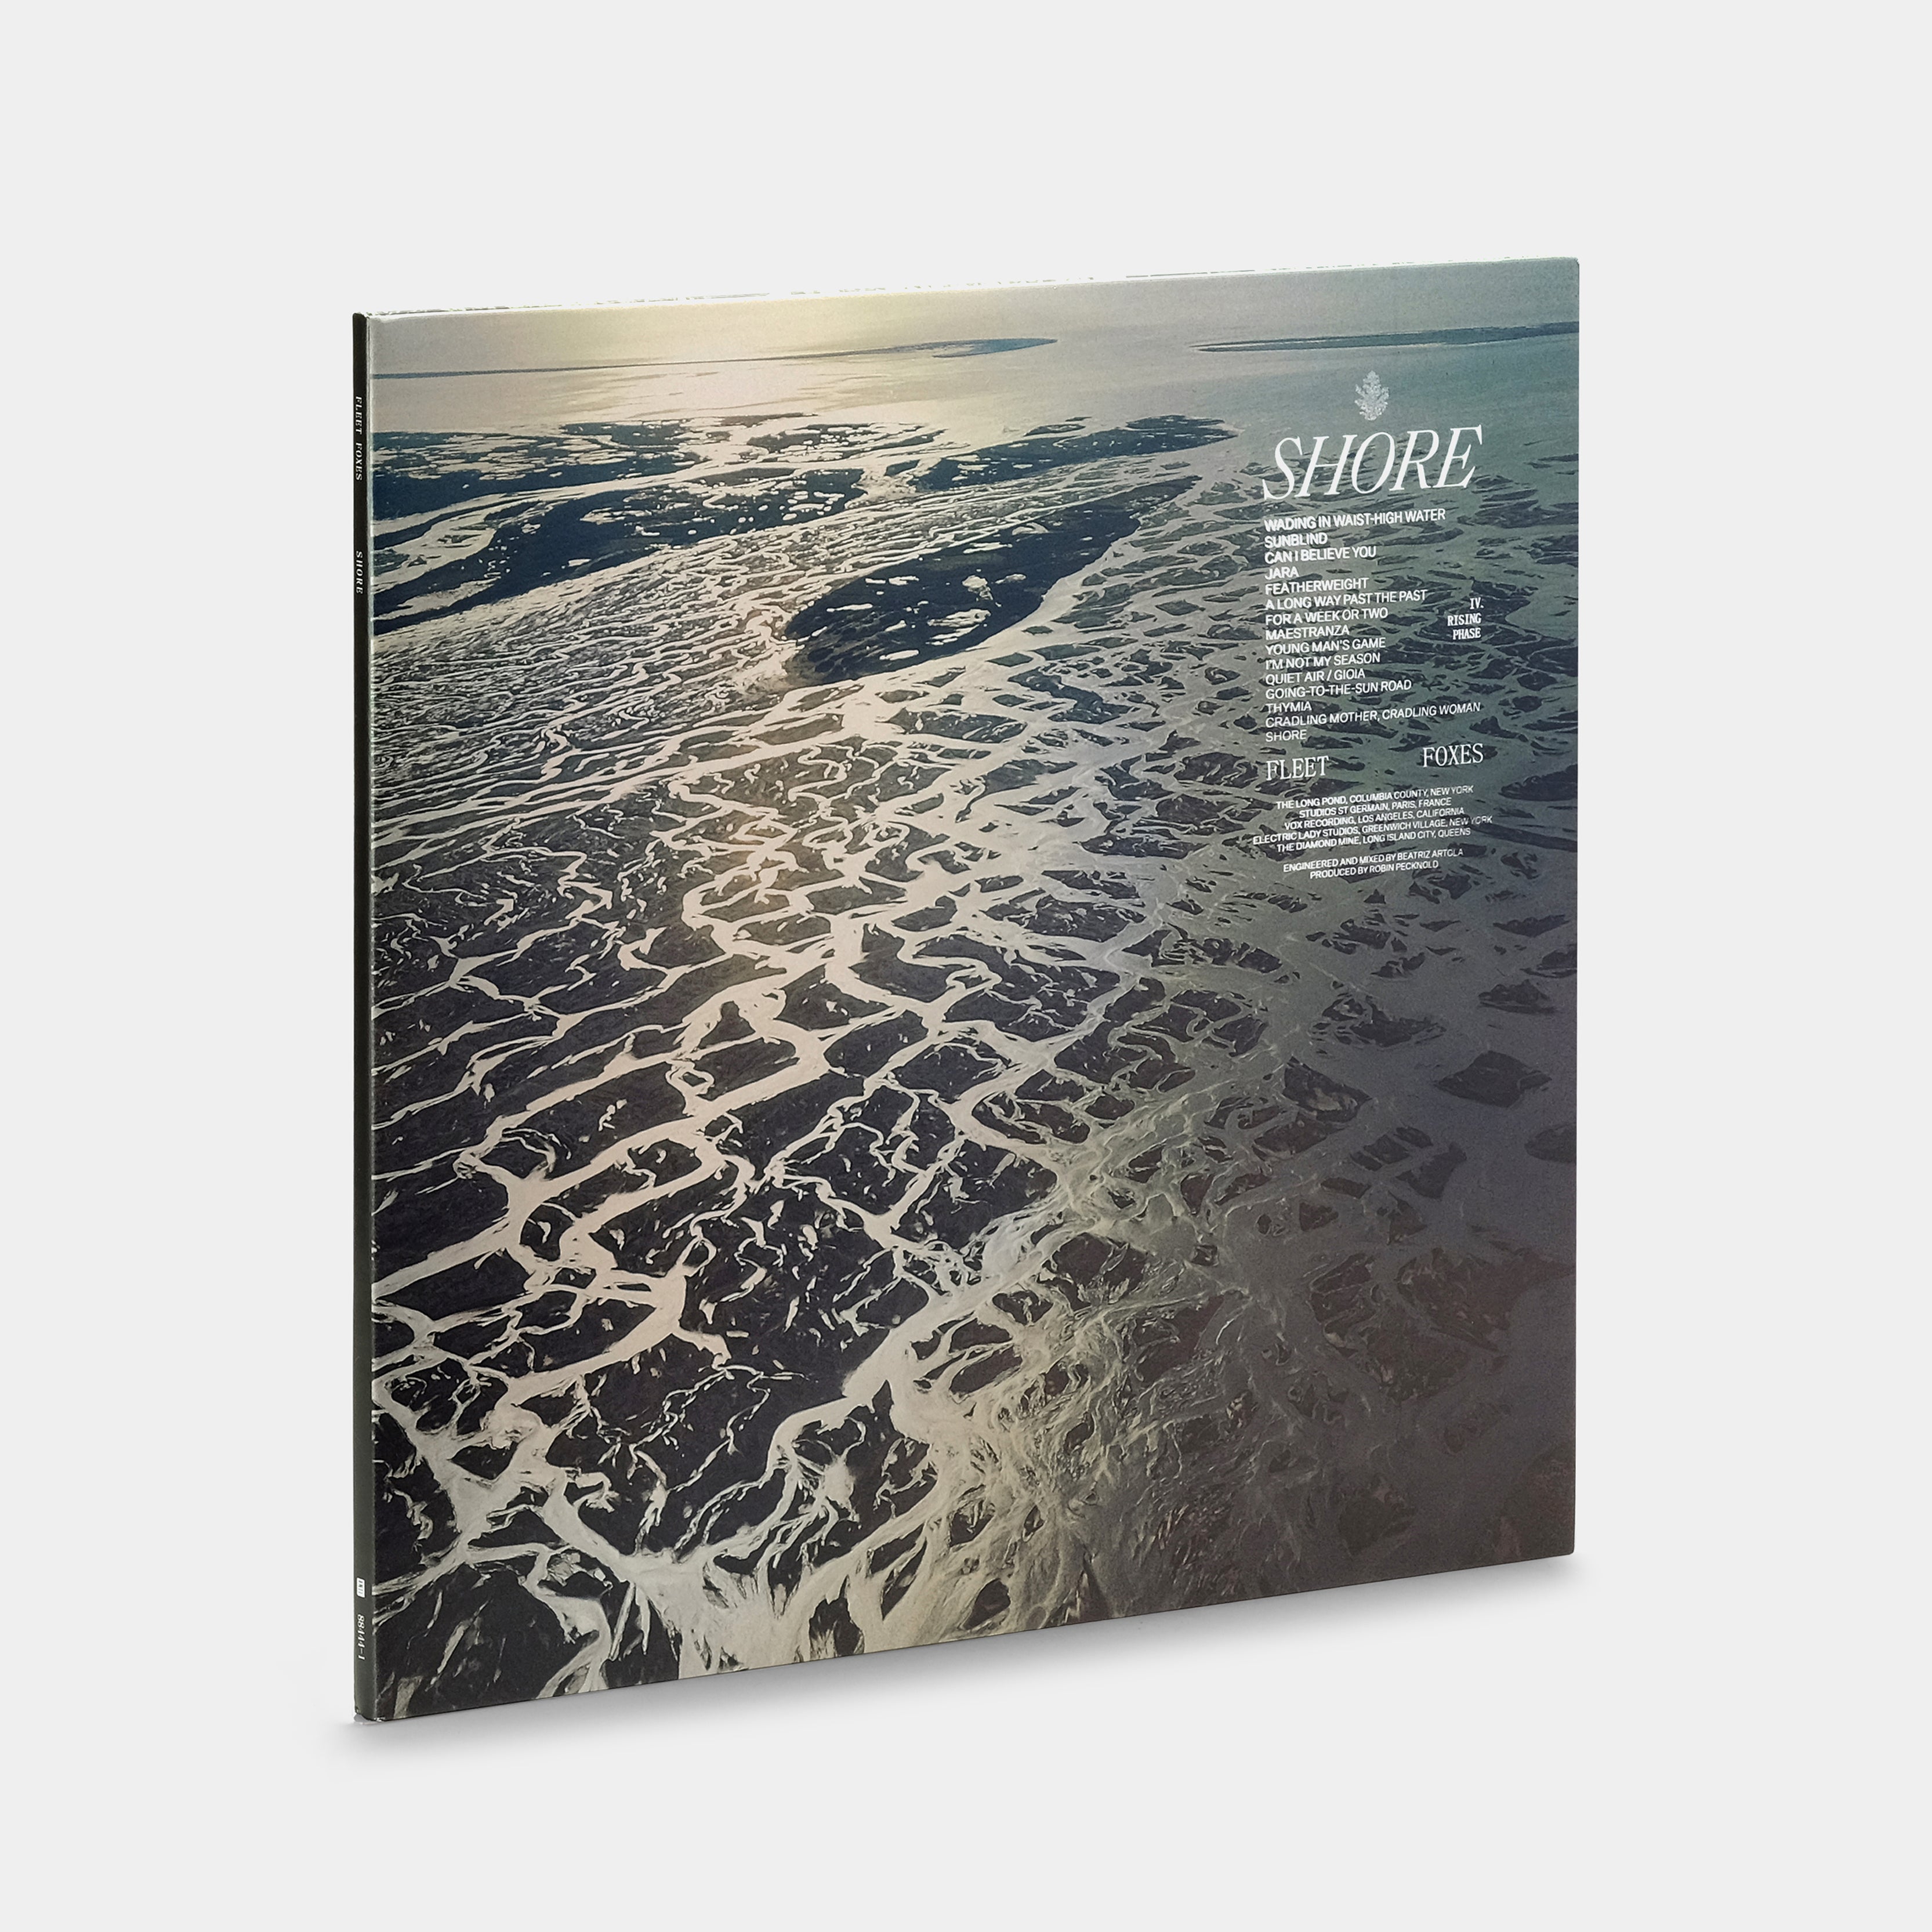 Fleet Foxes - Shore 2xLP Crystal Clear Vinyl Record